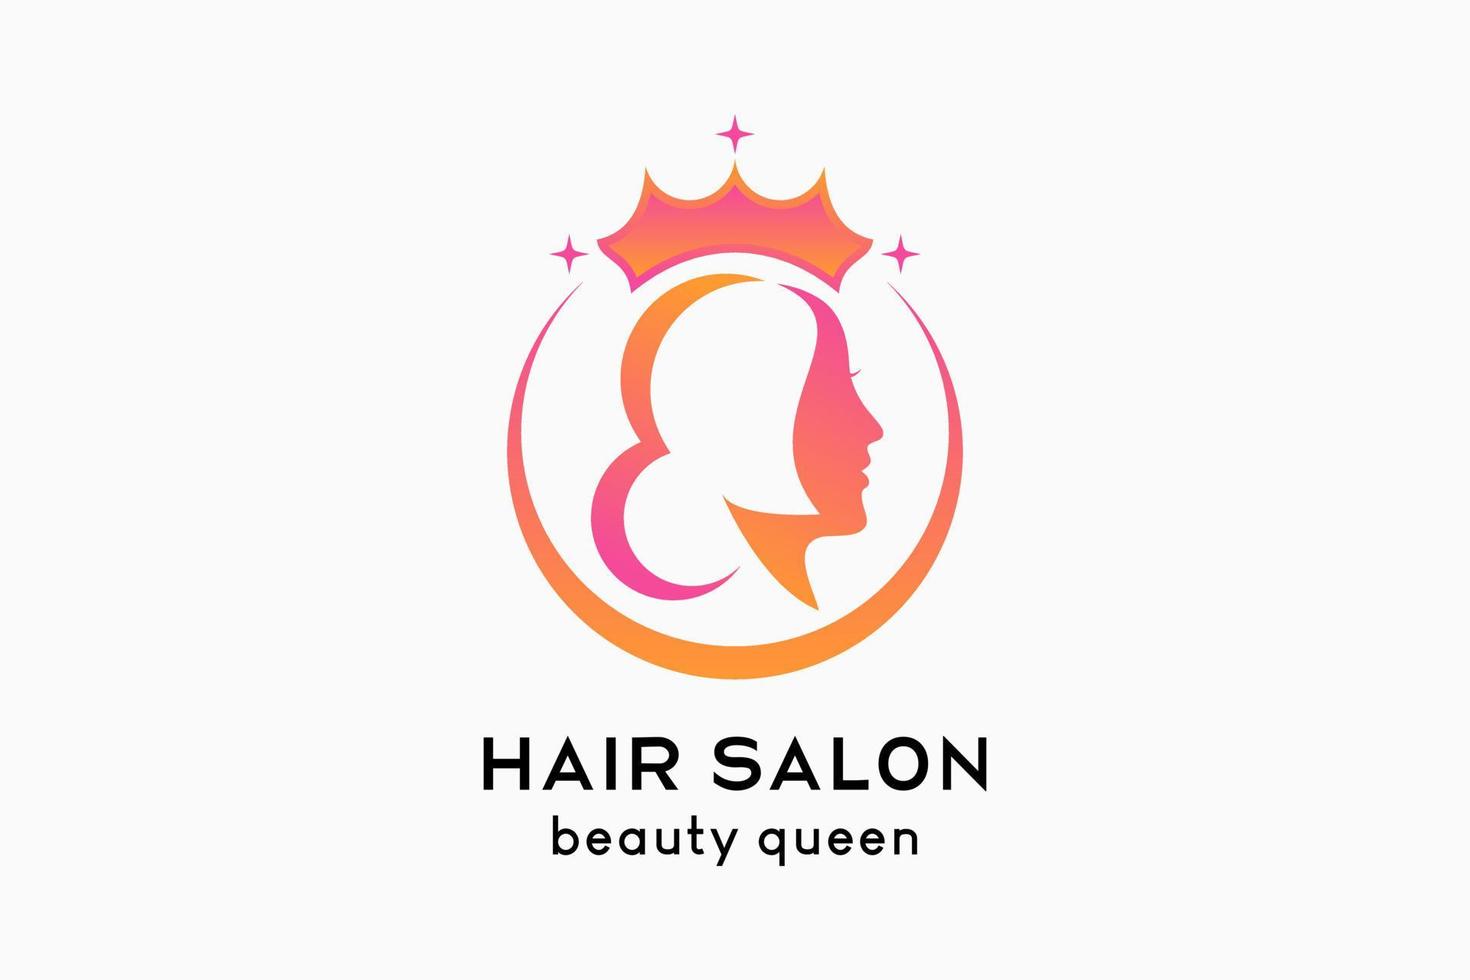 conception de logo de salon de coiffure ou de soins capillaires, visage de femme combiné avec une icône de couronne dans un cercle vecteur